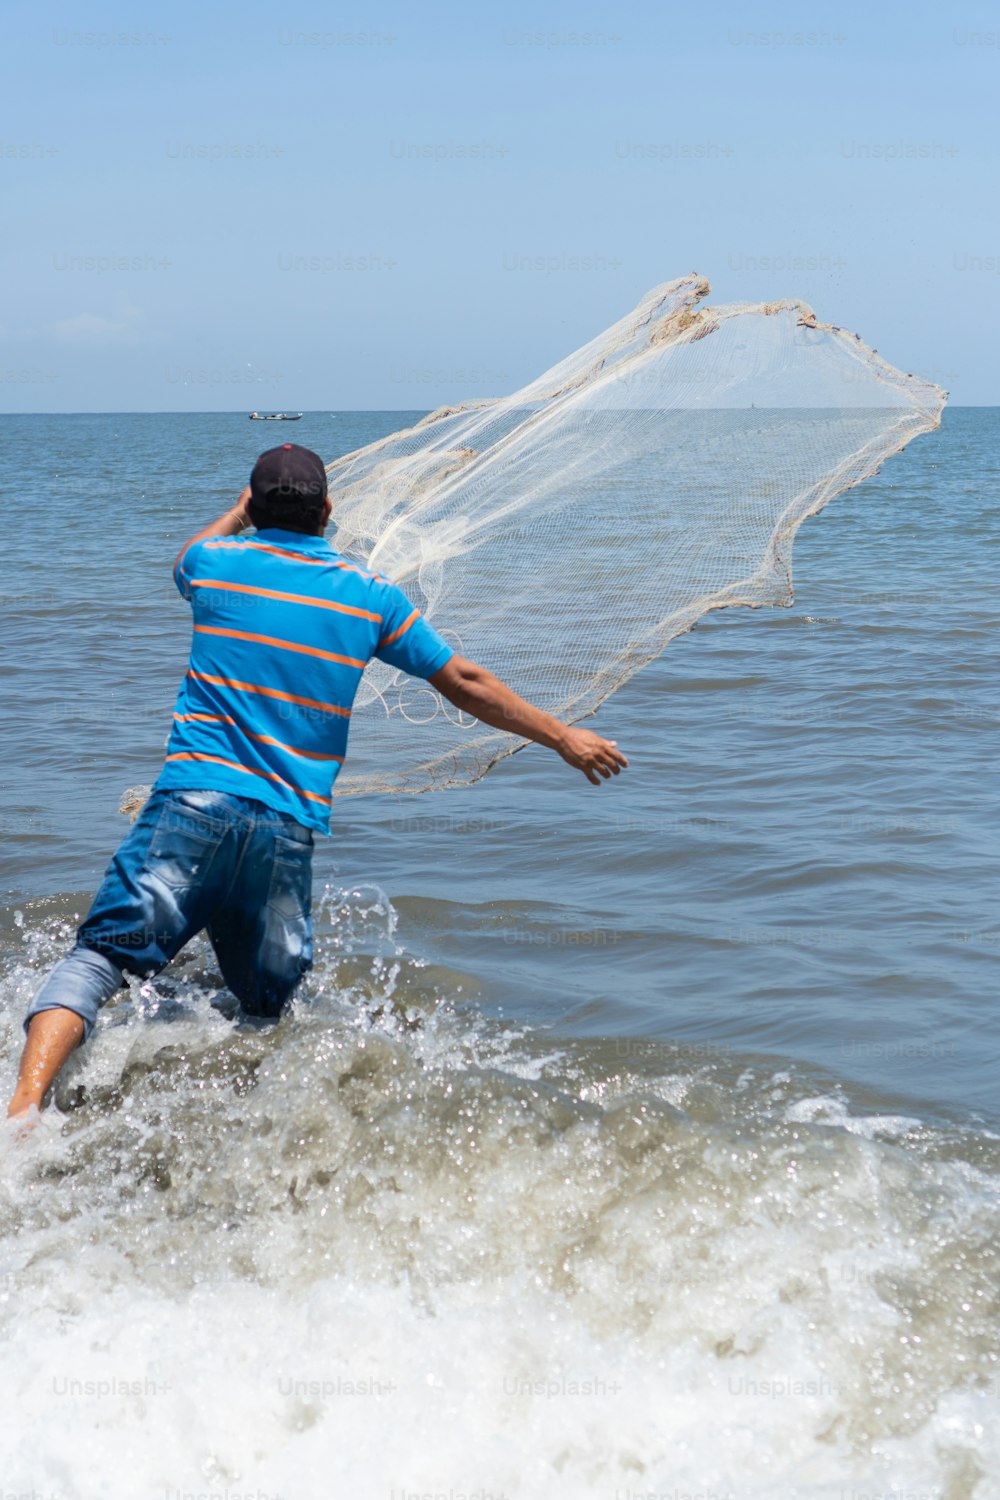 Pescador en la playa lanzando una red de pesca